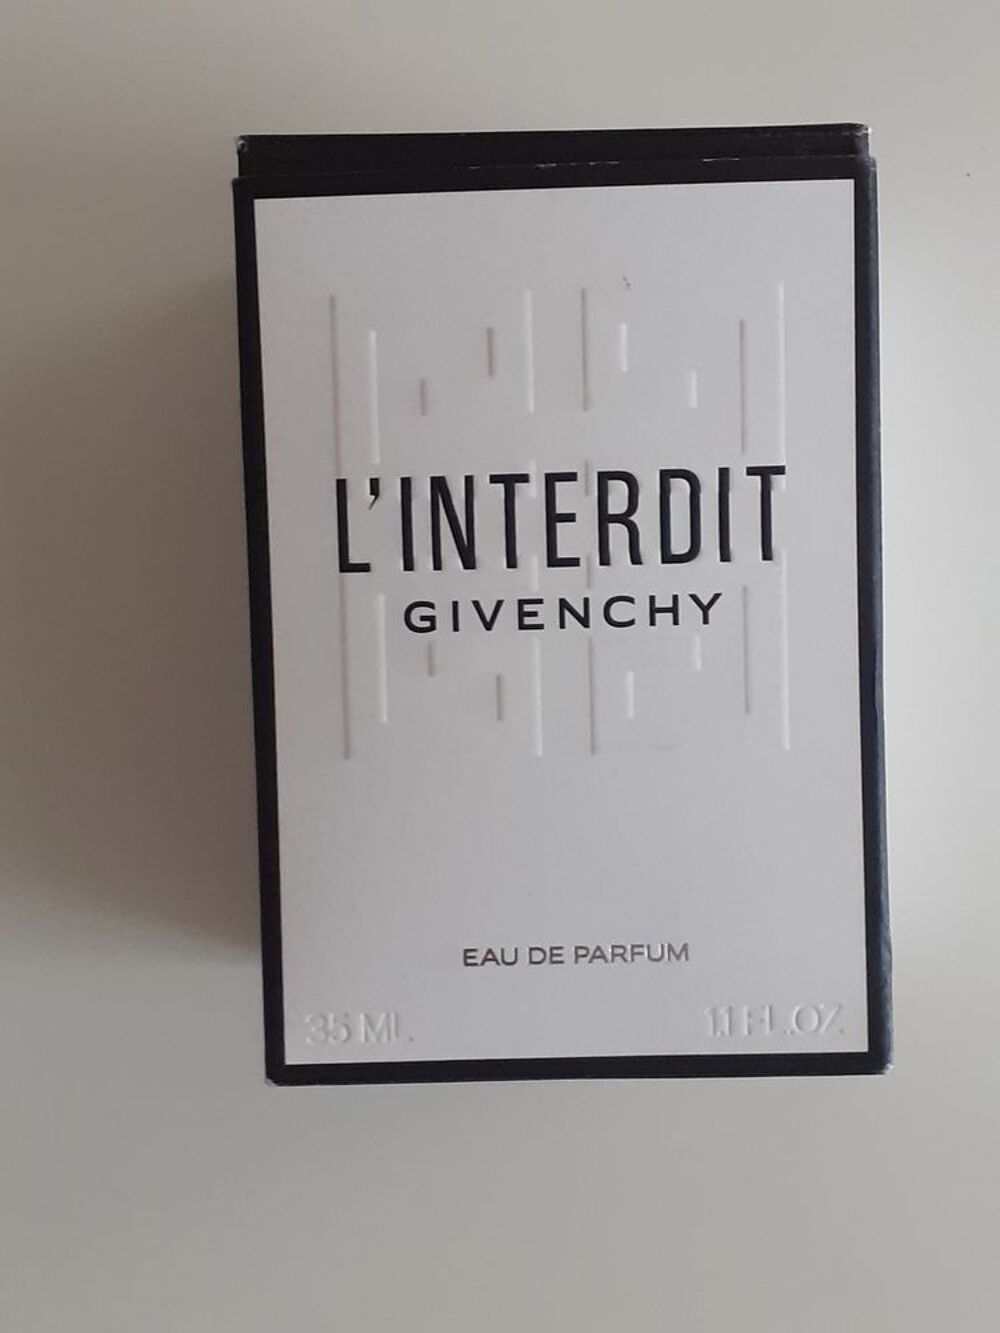 Eau de parfum L'Interdit de Givenchy 35 mL 30 euros Vtements